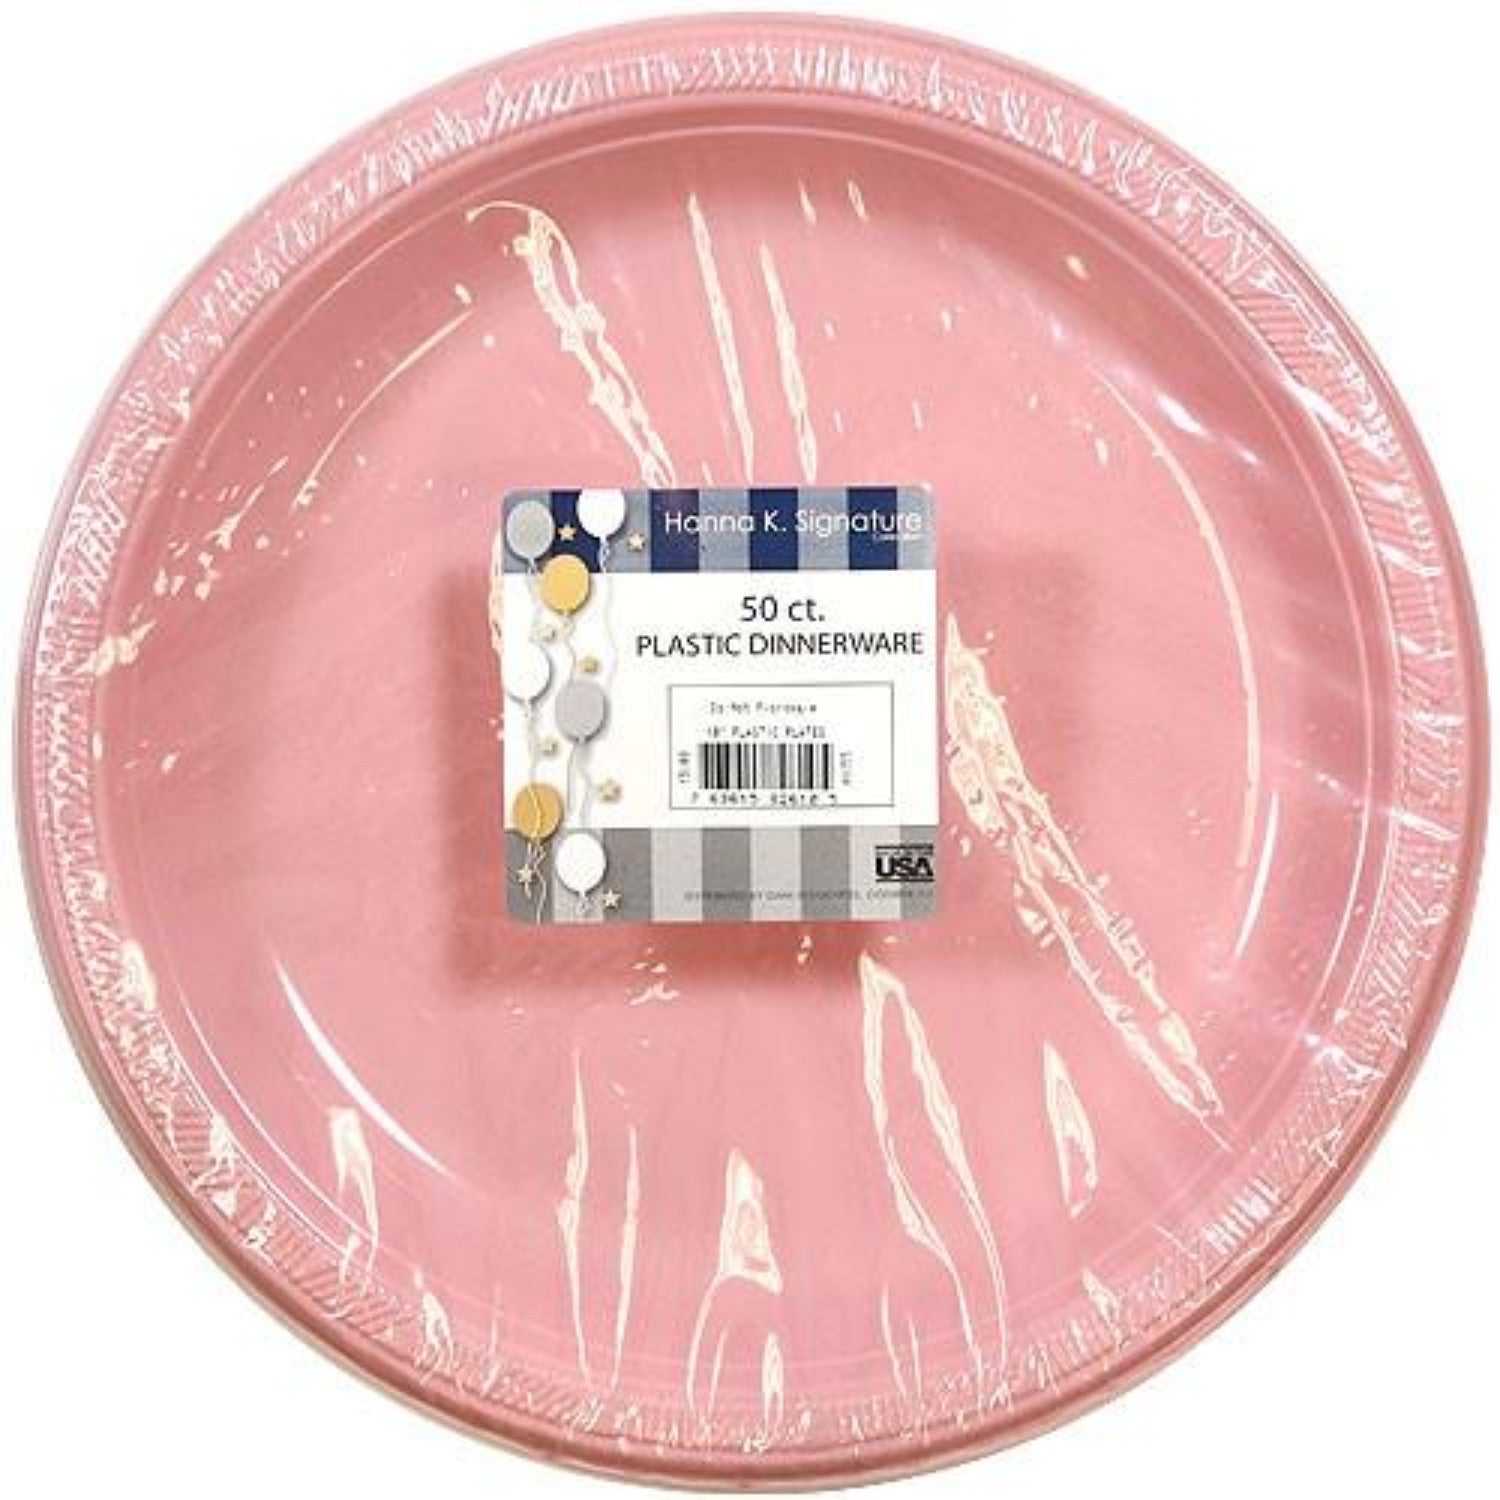 Hanna K. Signature Plastic Plates Pink 9" Plastic Plates Hanna K   